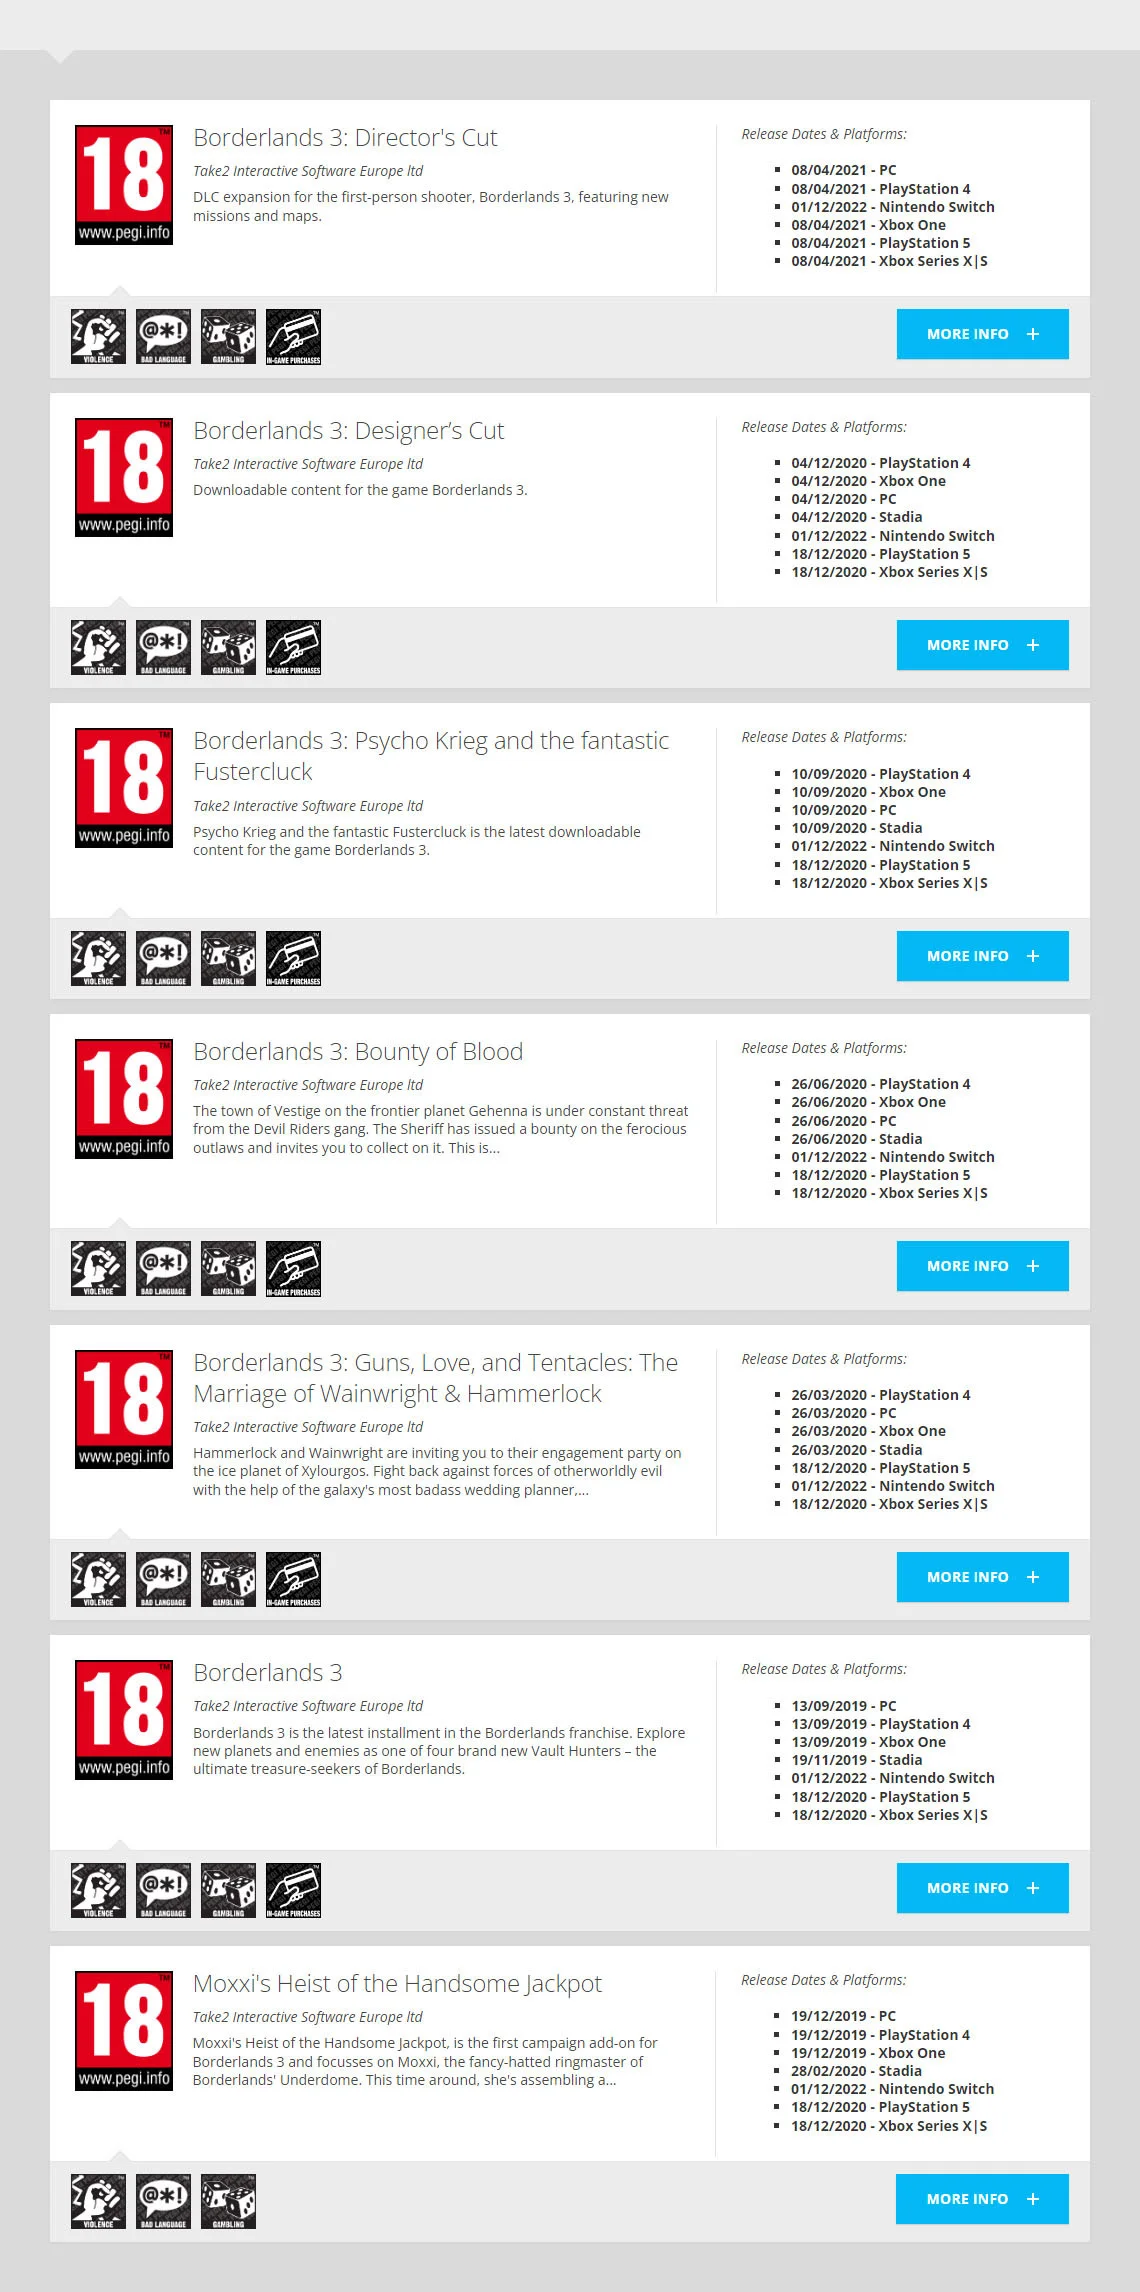 Шутер Borderlands 3 получил возрастной рейтинг для Nintendo Switch - фото 1